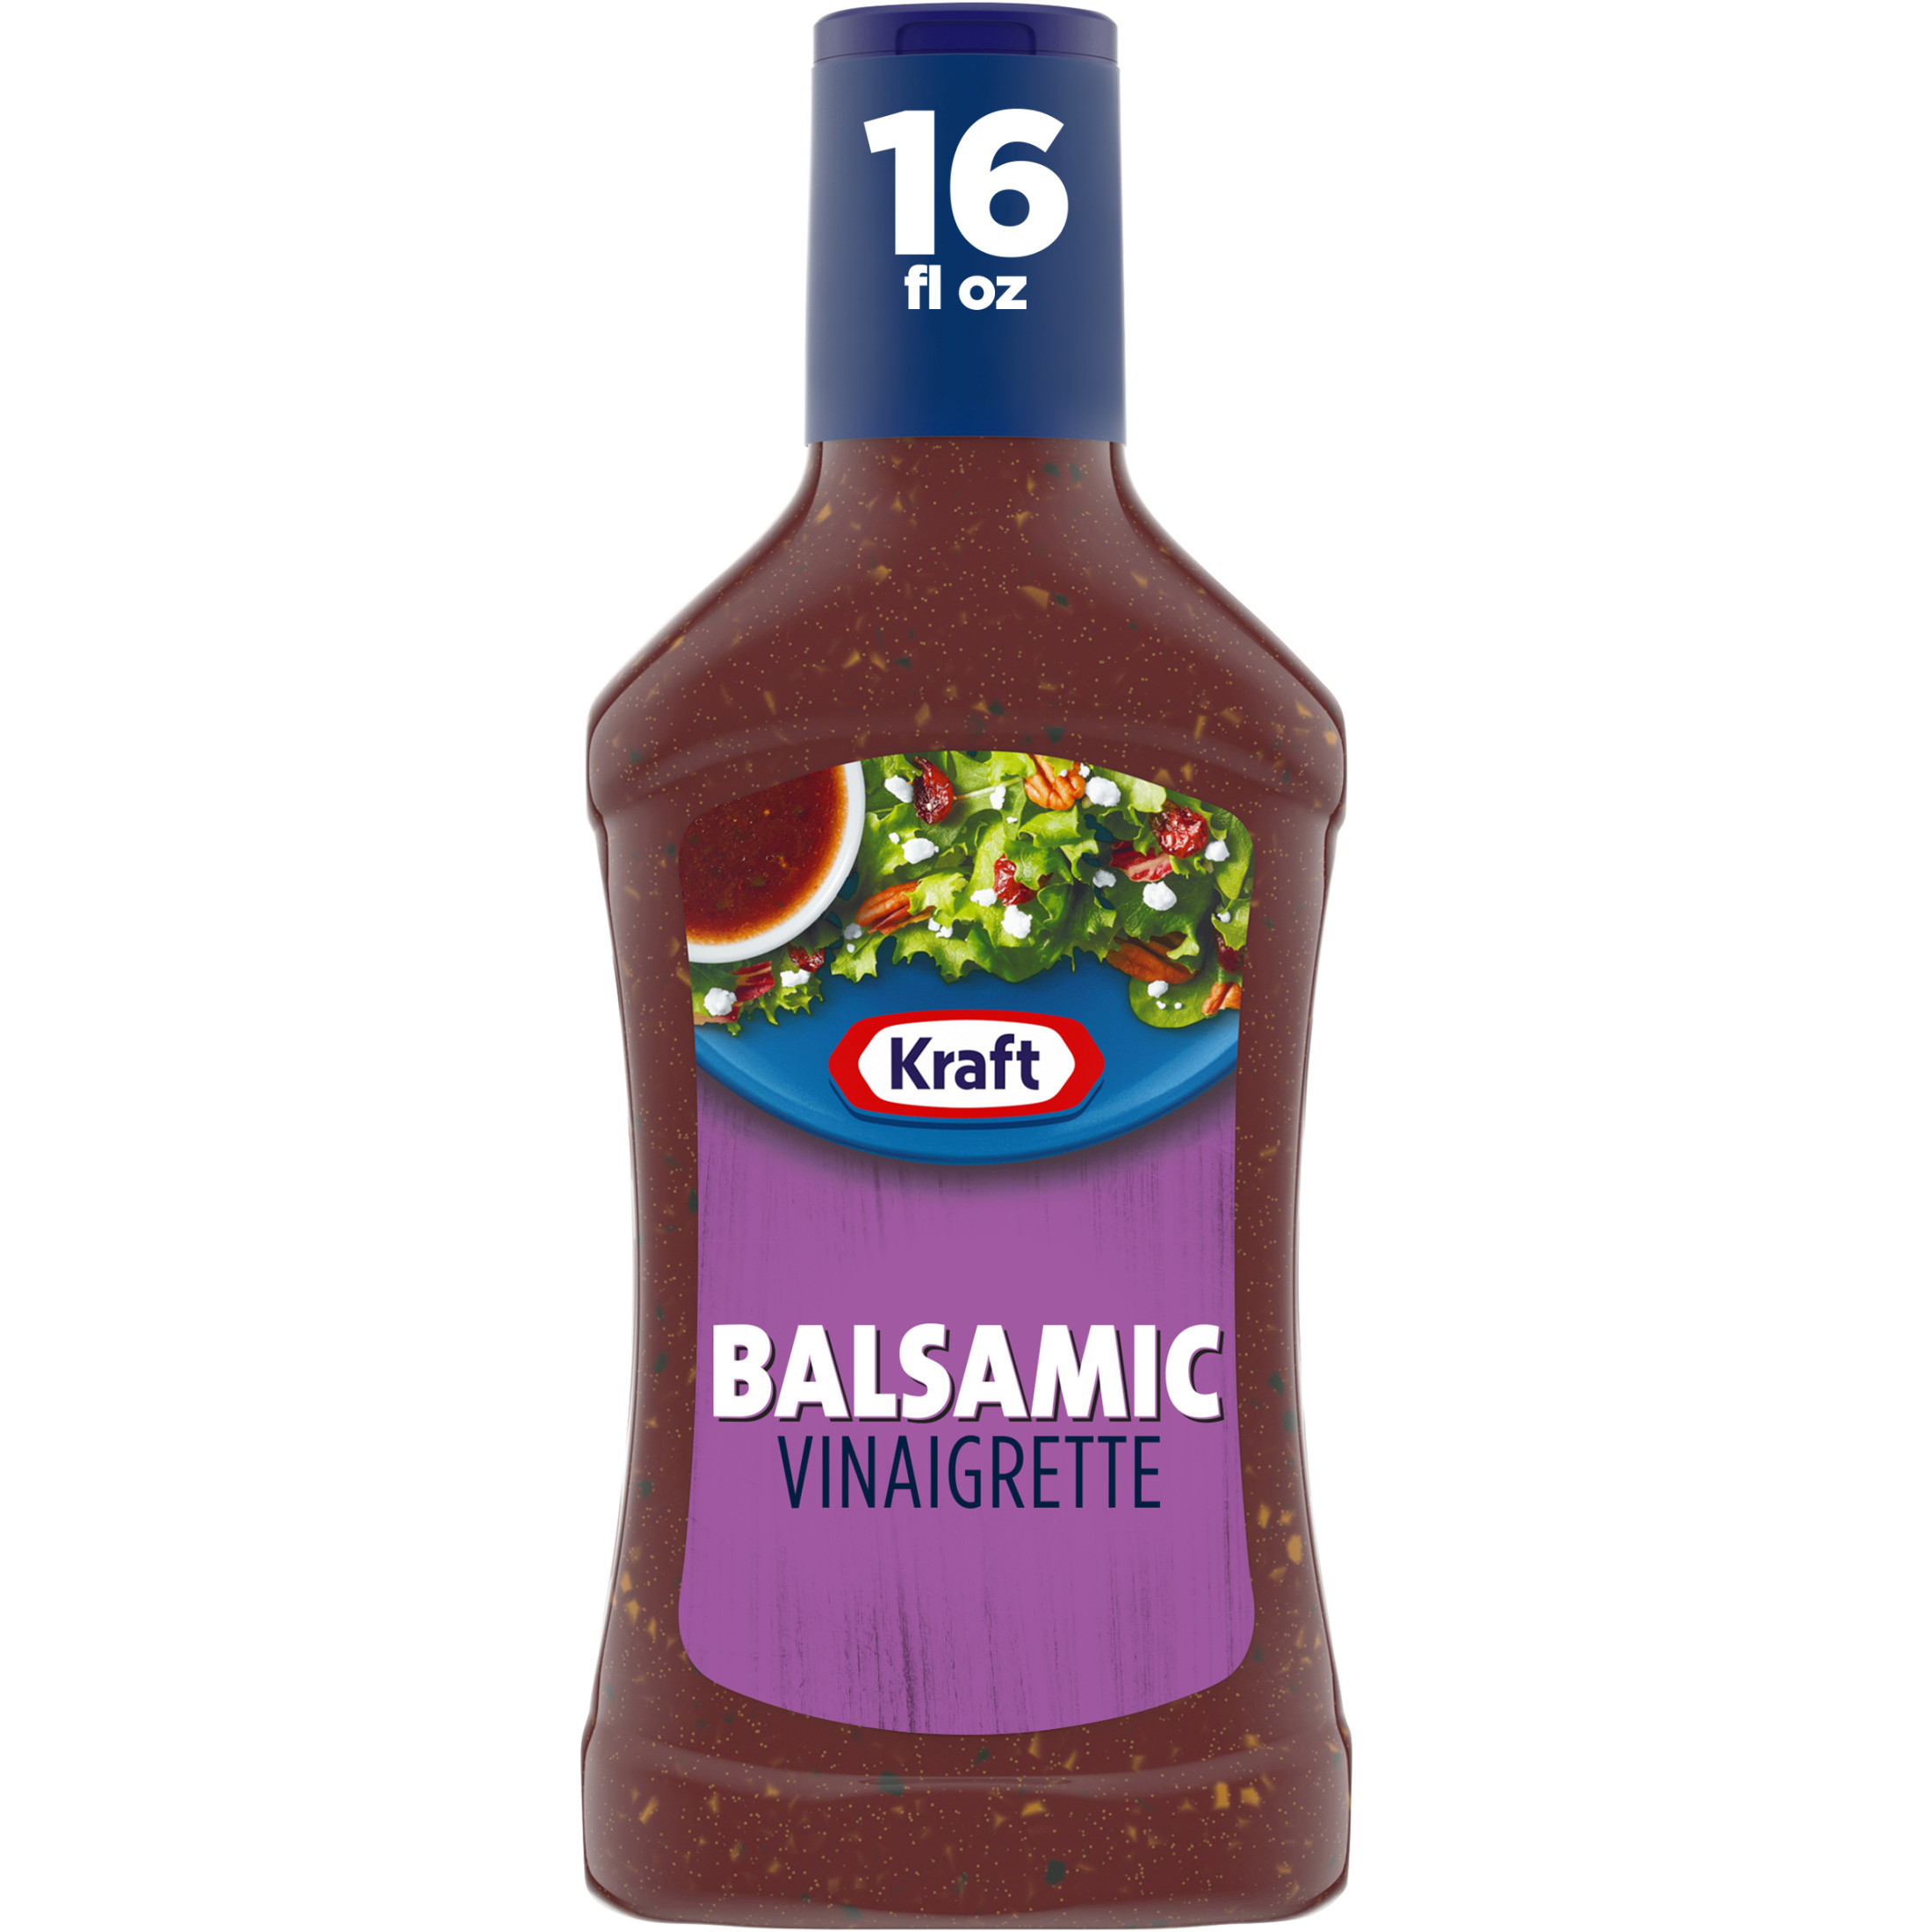 Kraft Balsamic Vinaigrette Salad Dressing, 16 fl oz Bottle - image 1 of 13